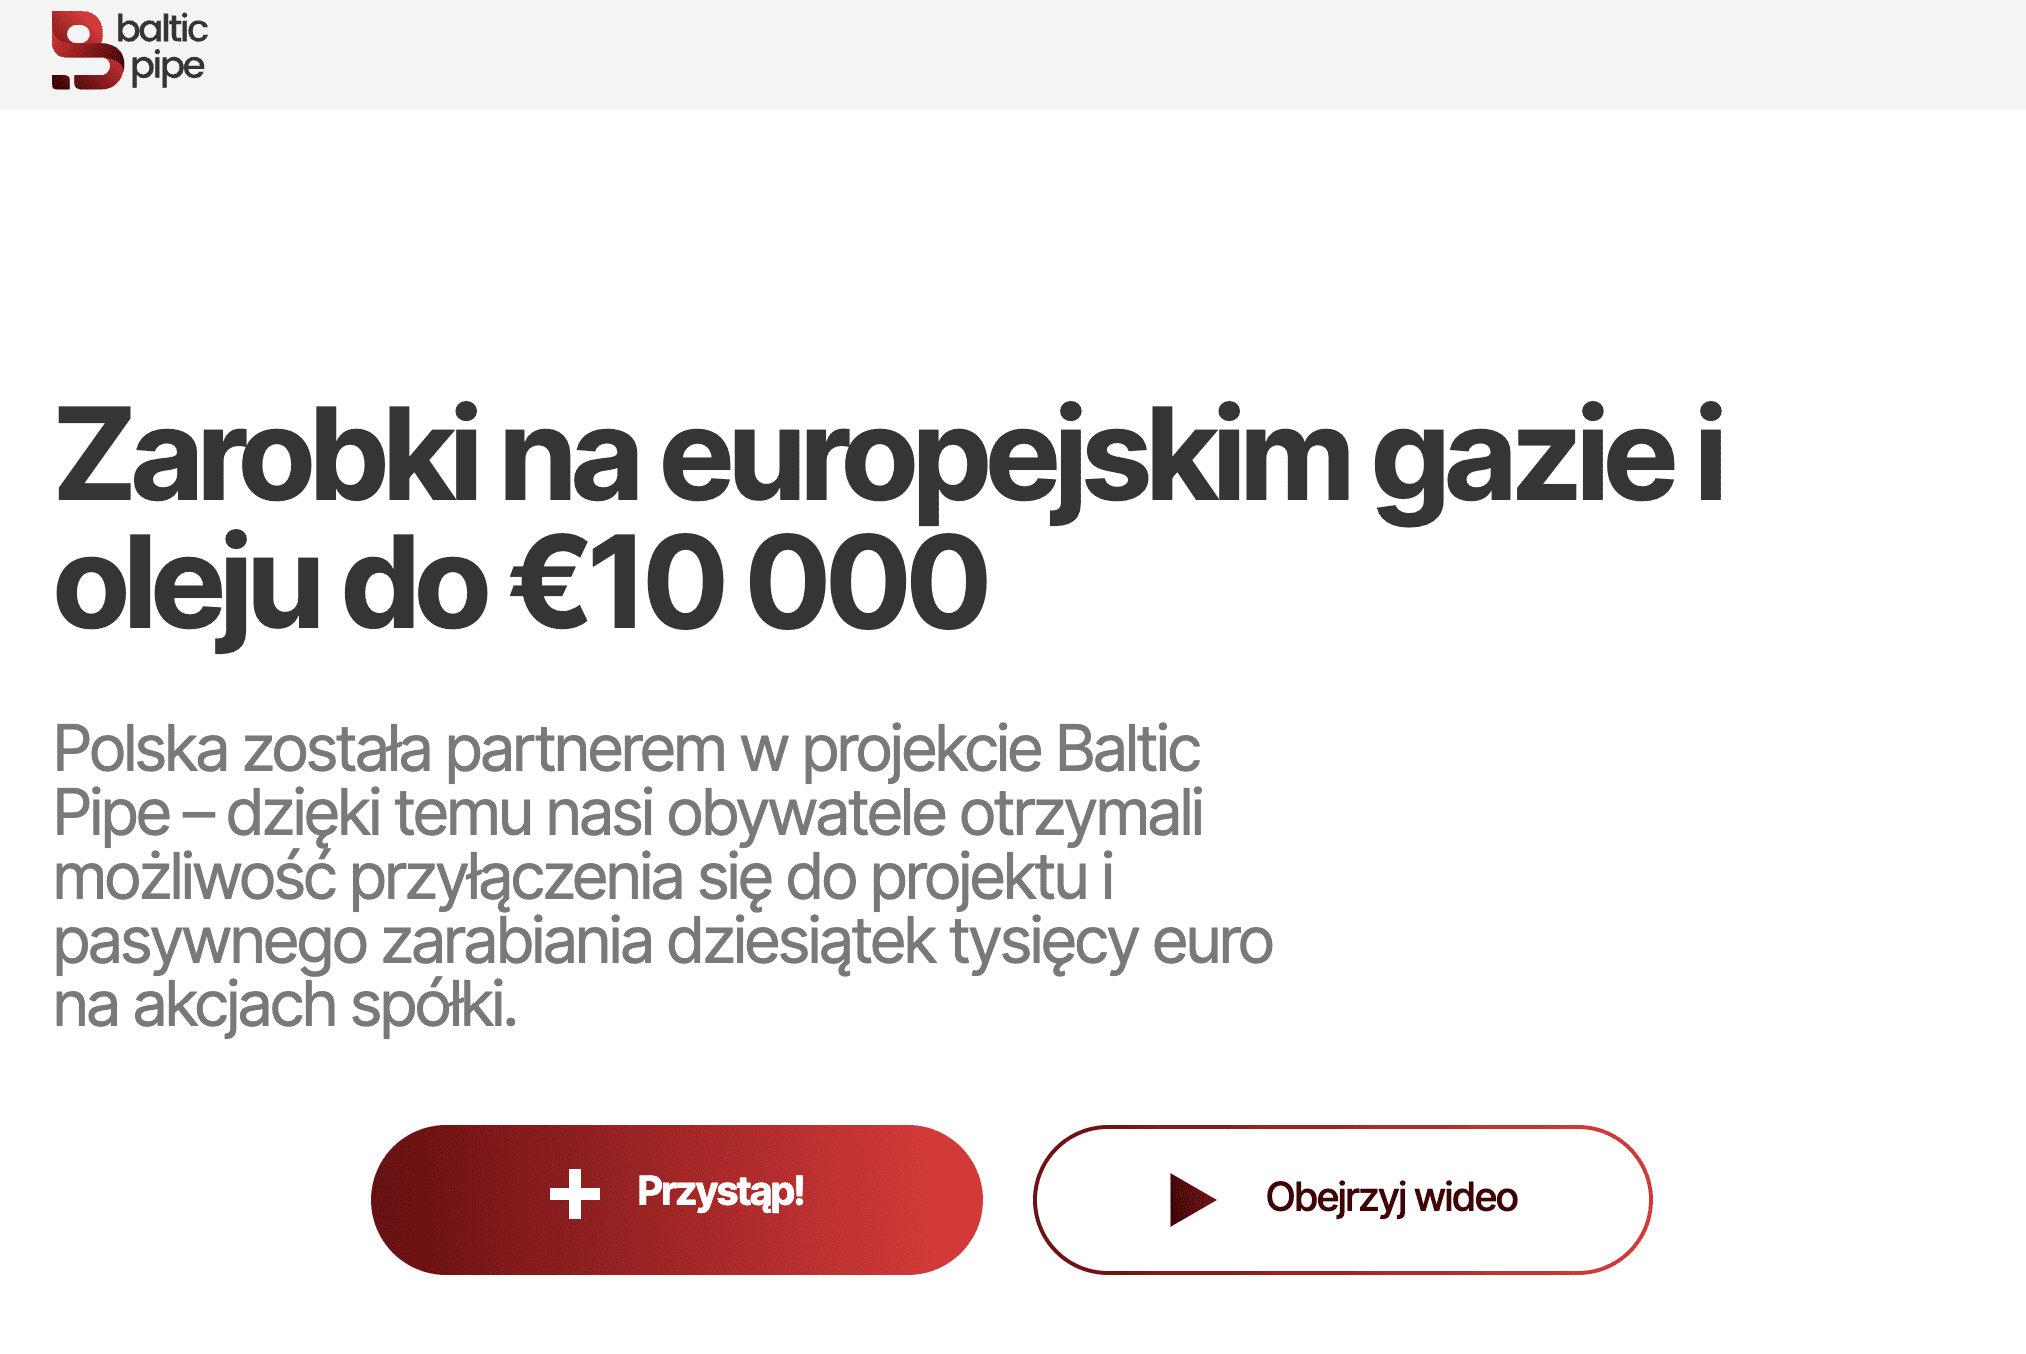 Zrzut ekranu ze strony oszustów. Widoczny jest napis, że obywatele Polski otrzymali możliwość przyłączenia się do projektu Baltic Pipe i pasywnego zarabiania dużych sum pieniędzy.